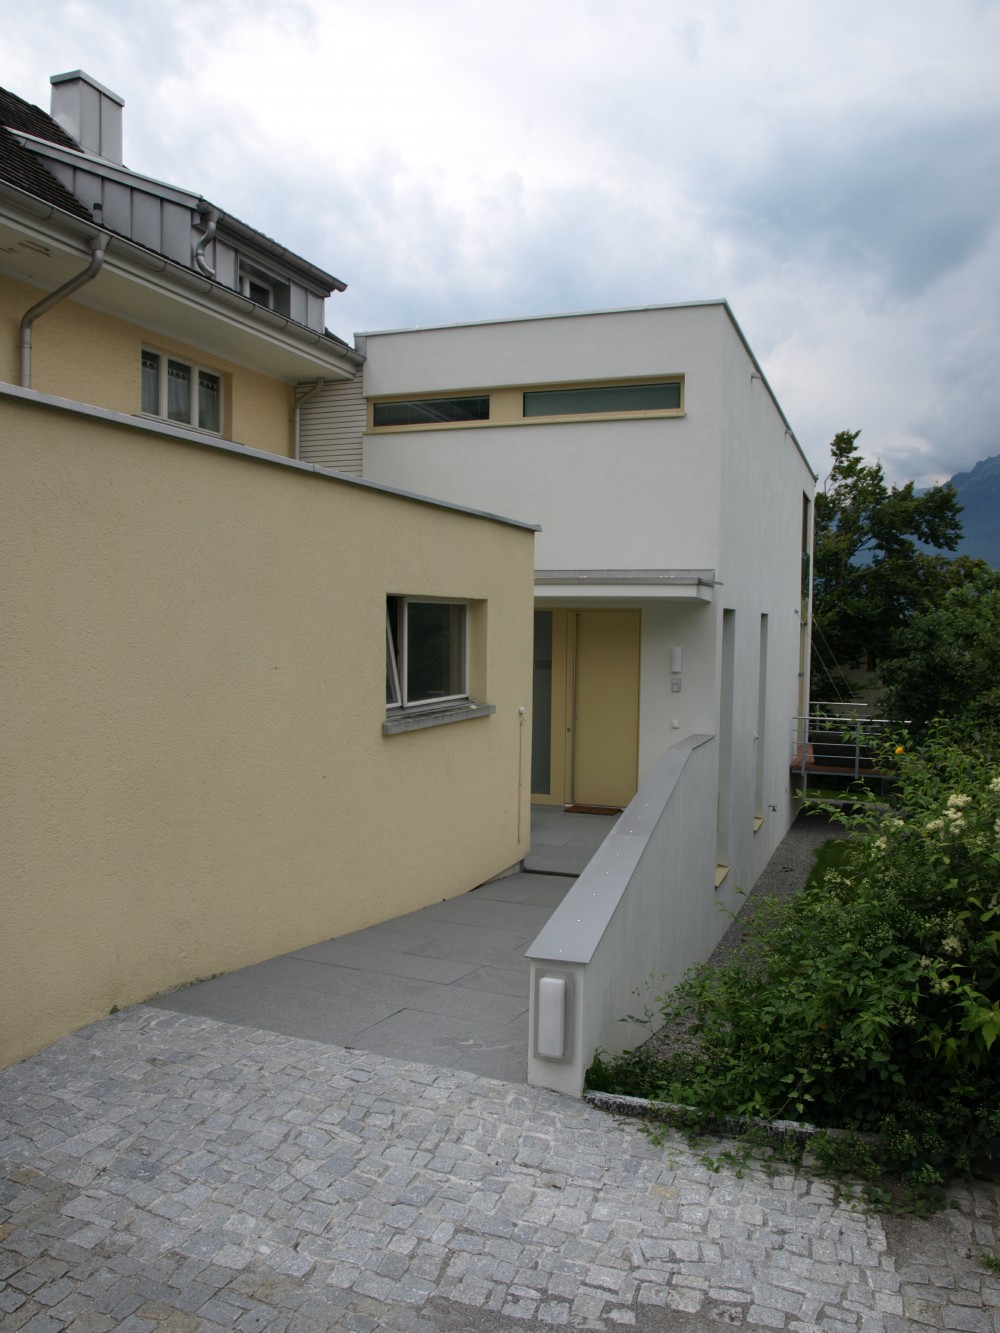 Neubau Einfamilienhaus, Vaduz 2008